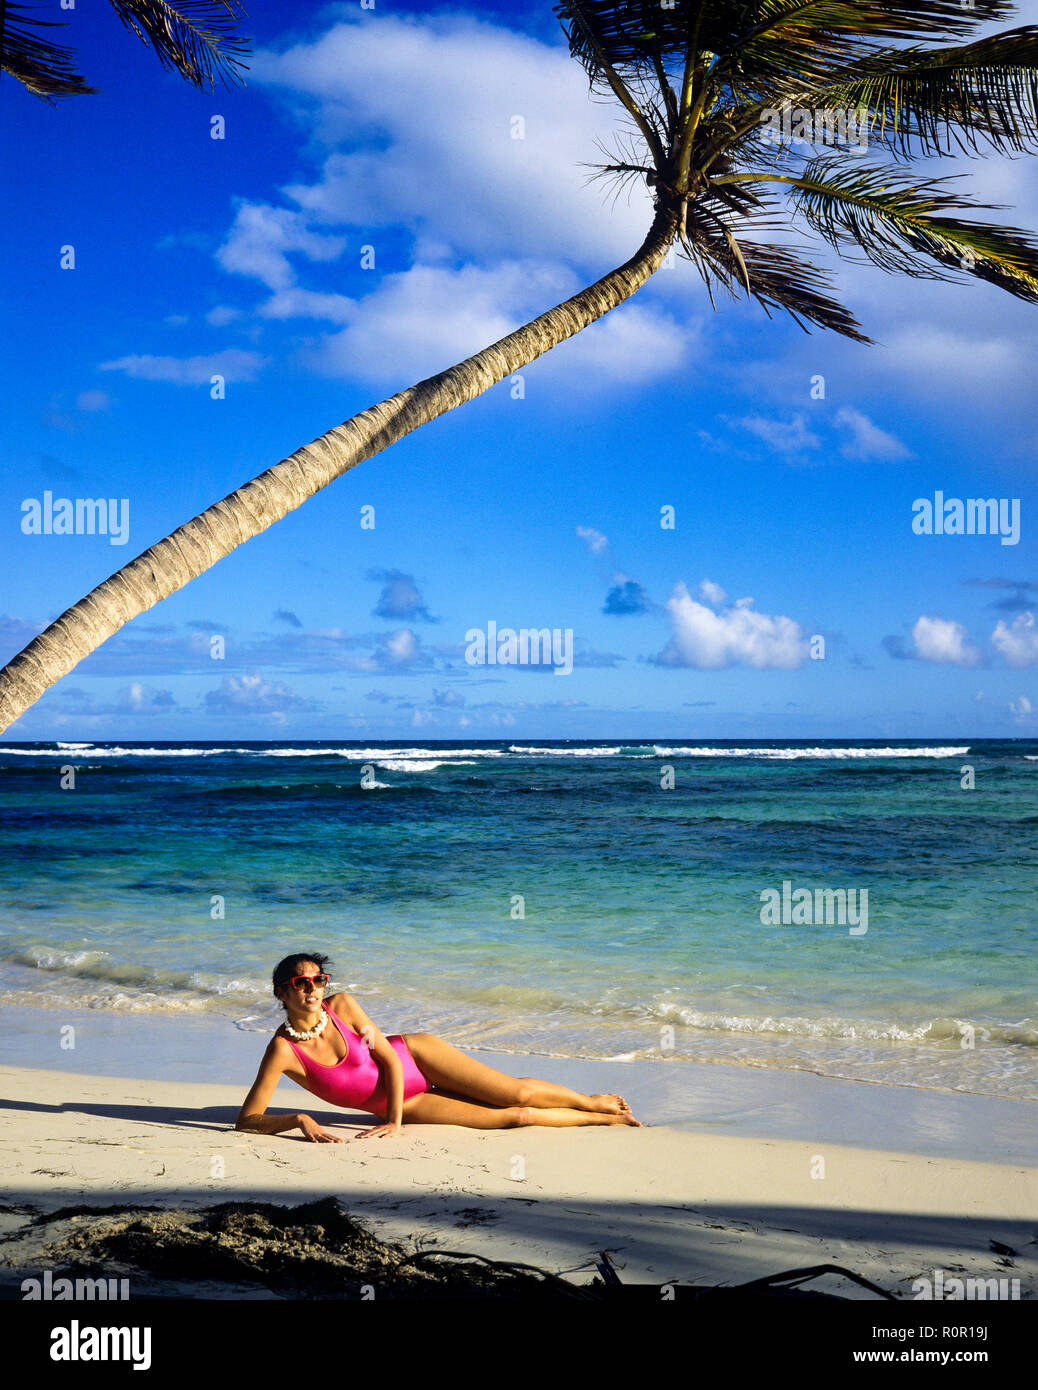 Giovane donna con rosa costume da bagno a prendere il sole sulla spiaggia tropicale, Palm tree, il mare dei Caraibi, Guadalupa, French West Indies, Foto Stock